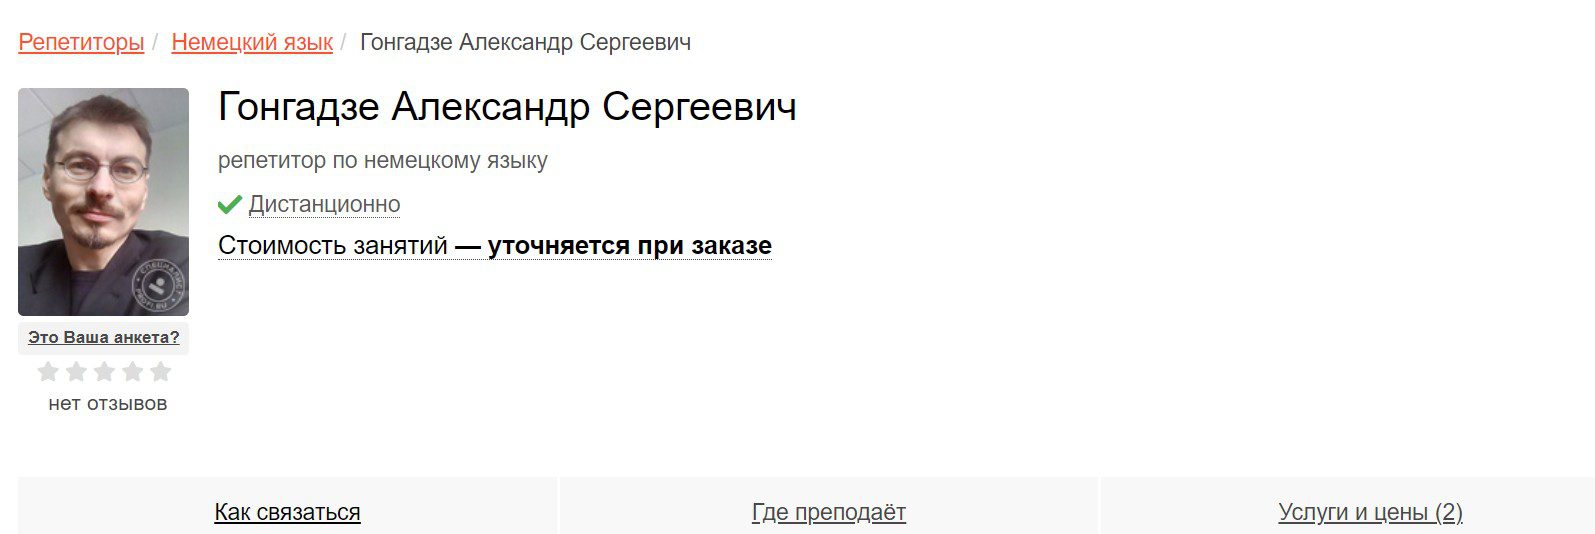 Александр Гонгадзе Вольный Росс репетитор